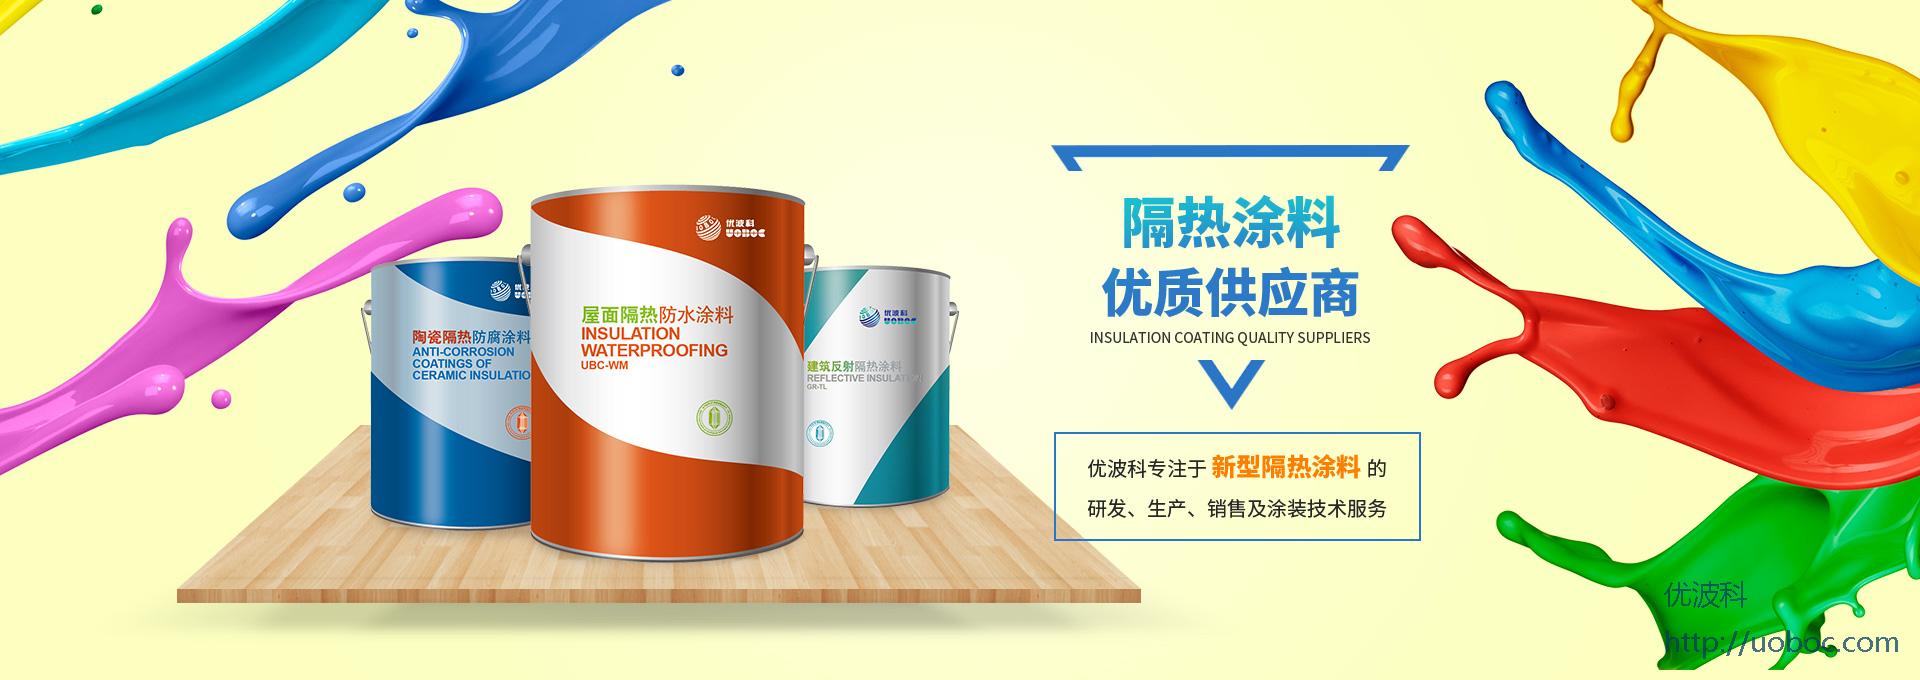 郑州奶茶app有限公司